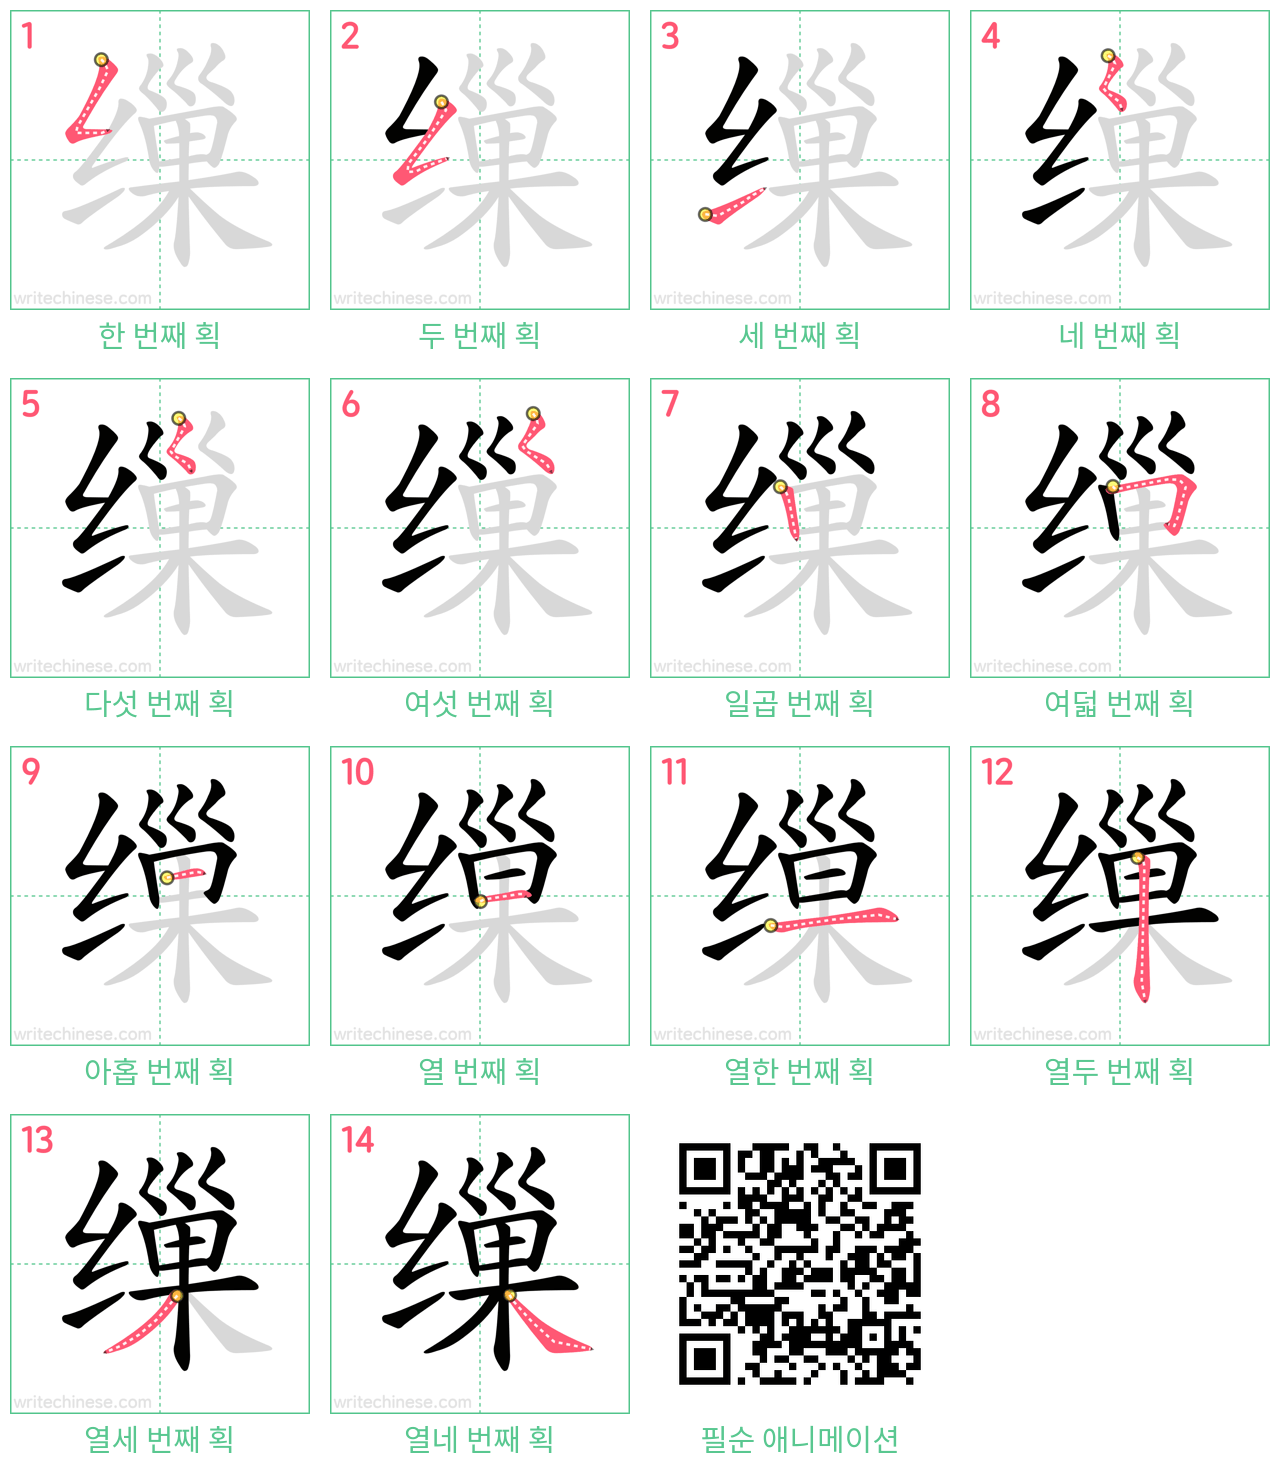 缫 step-by-step stroke order diagrams